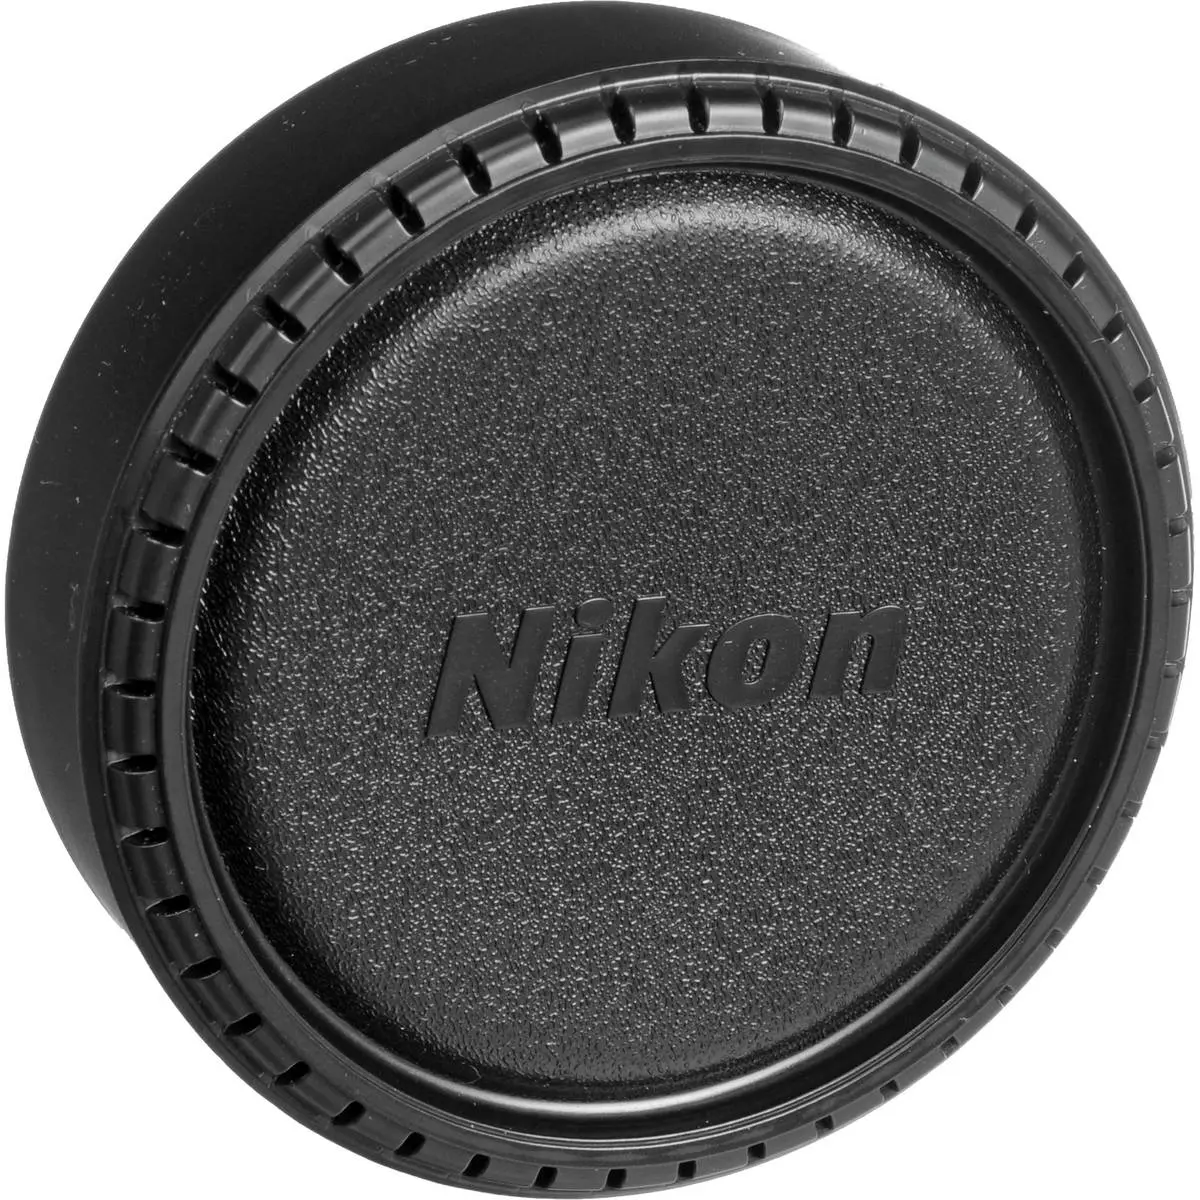 3. Nikon AF DX Fisheye-Nikkor 10.5mm f/2.8G ED